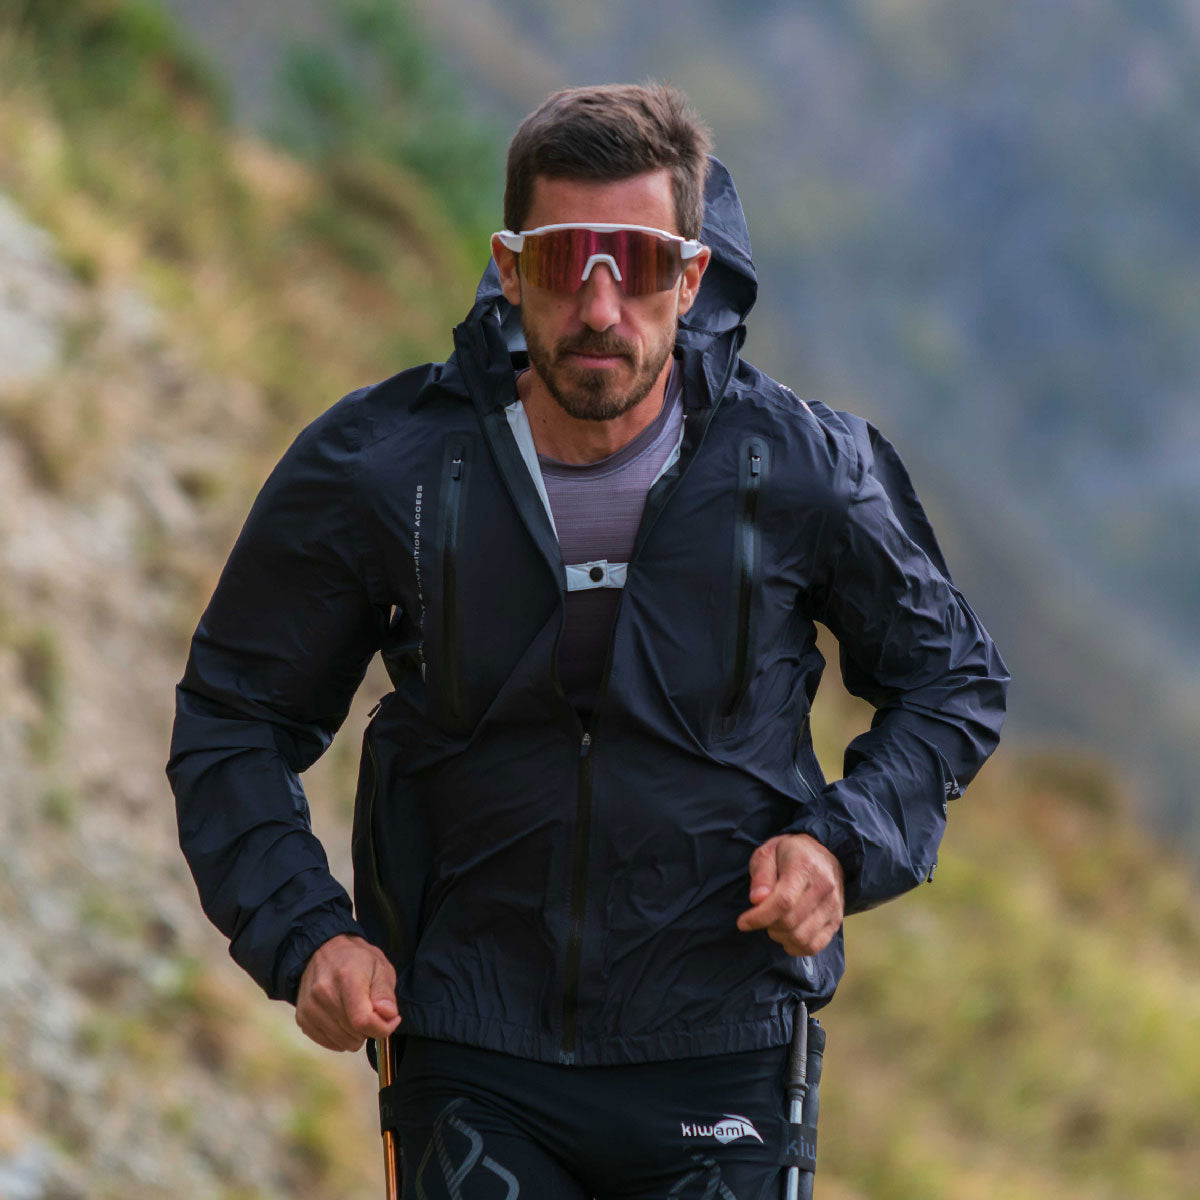 Vêtements techniques Trail Running Homme : veste, short, maillot